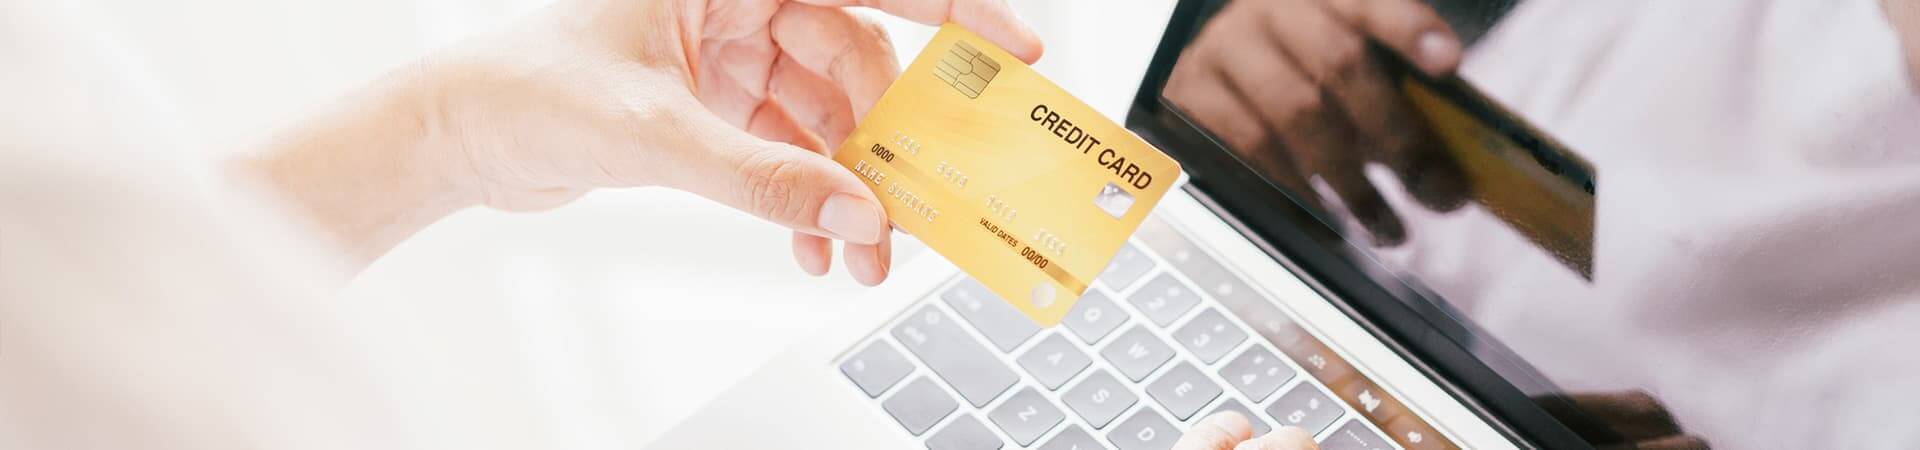 クレジットカード支払いイメージ